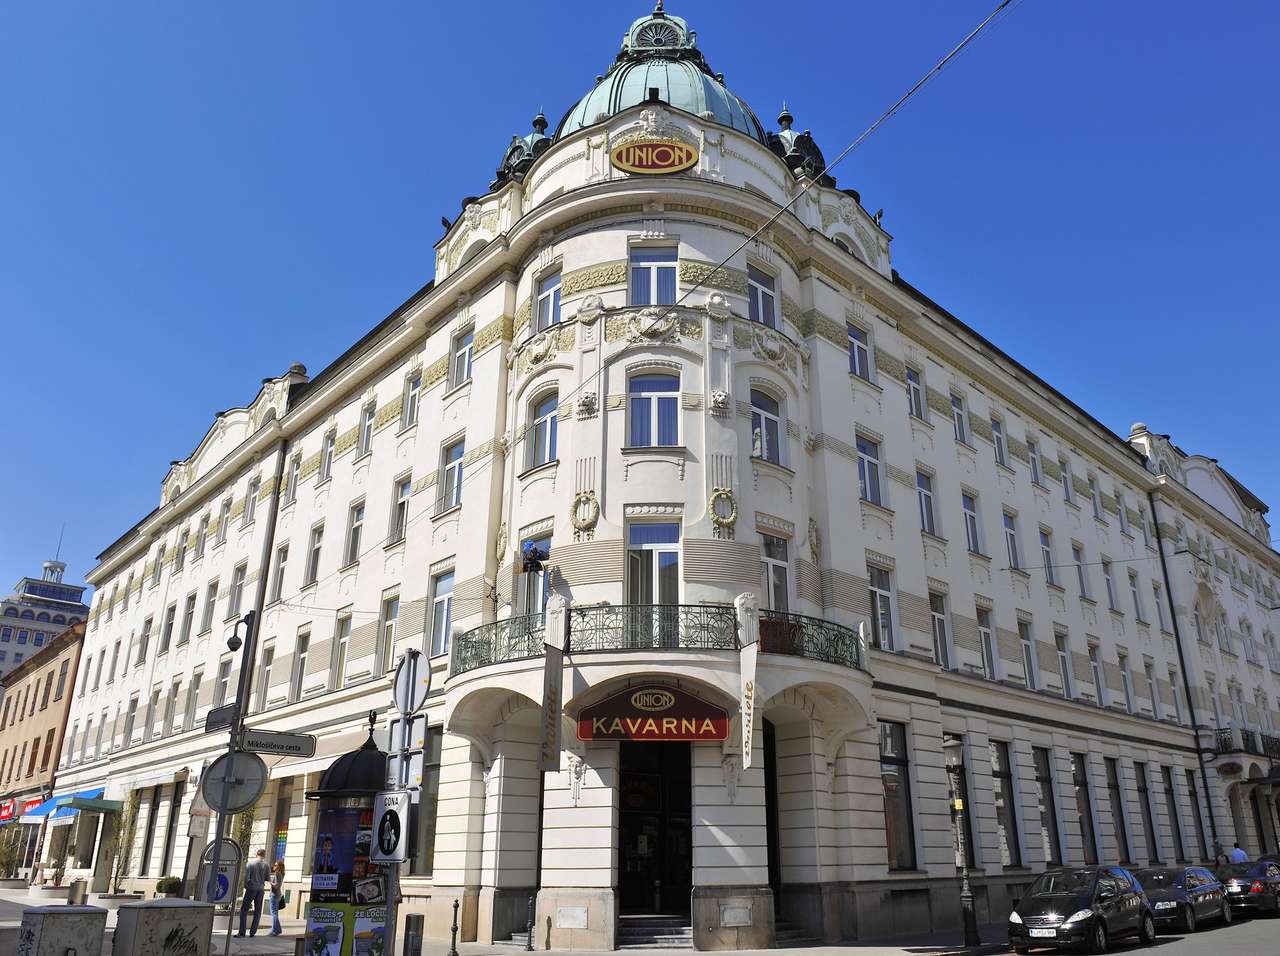 Λιουμπλιάνα Grand Hotel Union Σλοβενία online παζλ